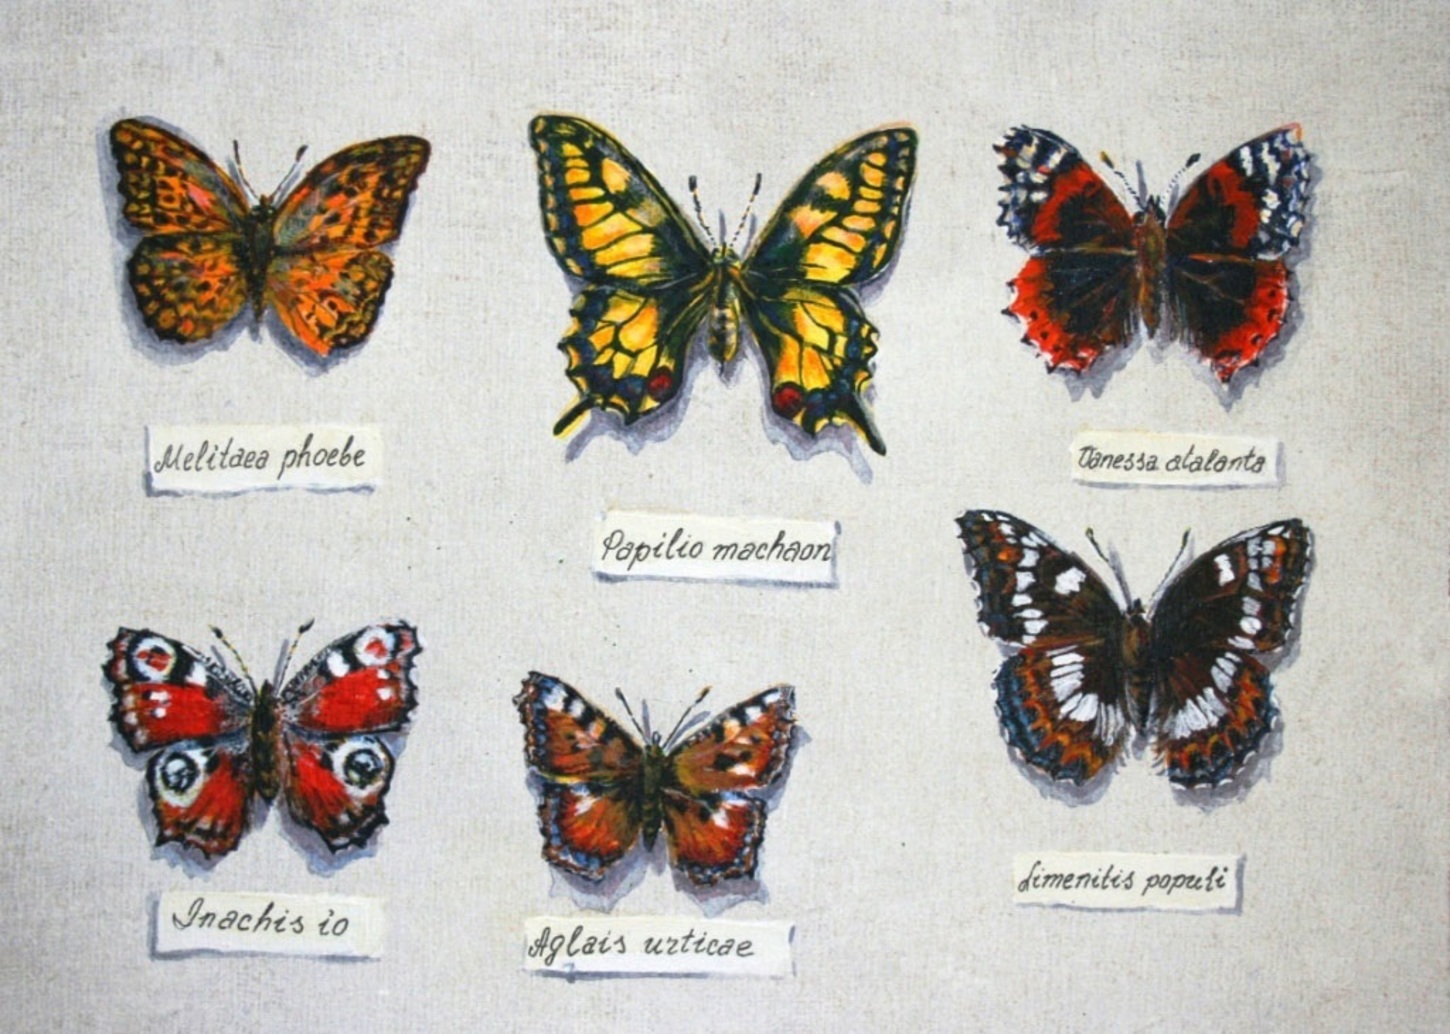 Название рисунков бабочки. Коллекция бабочек Аксакова. Виды бабочек. Виды бабочек с названиями. Коллекция бабочек с их названиями.